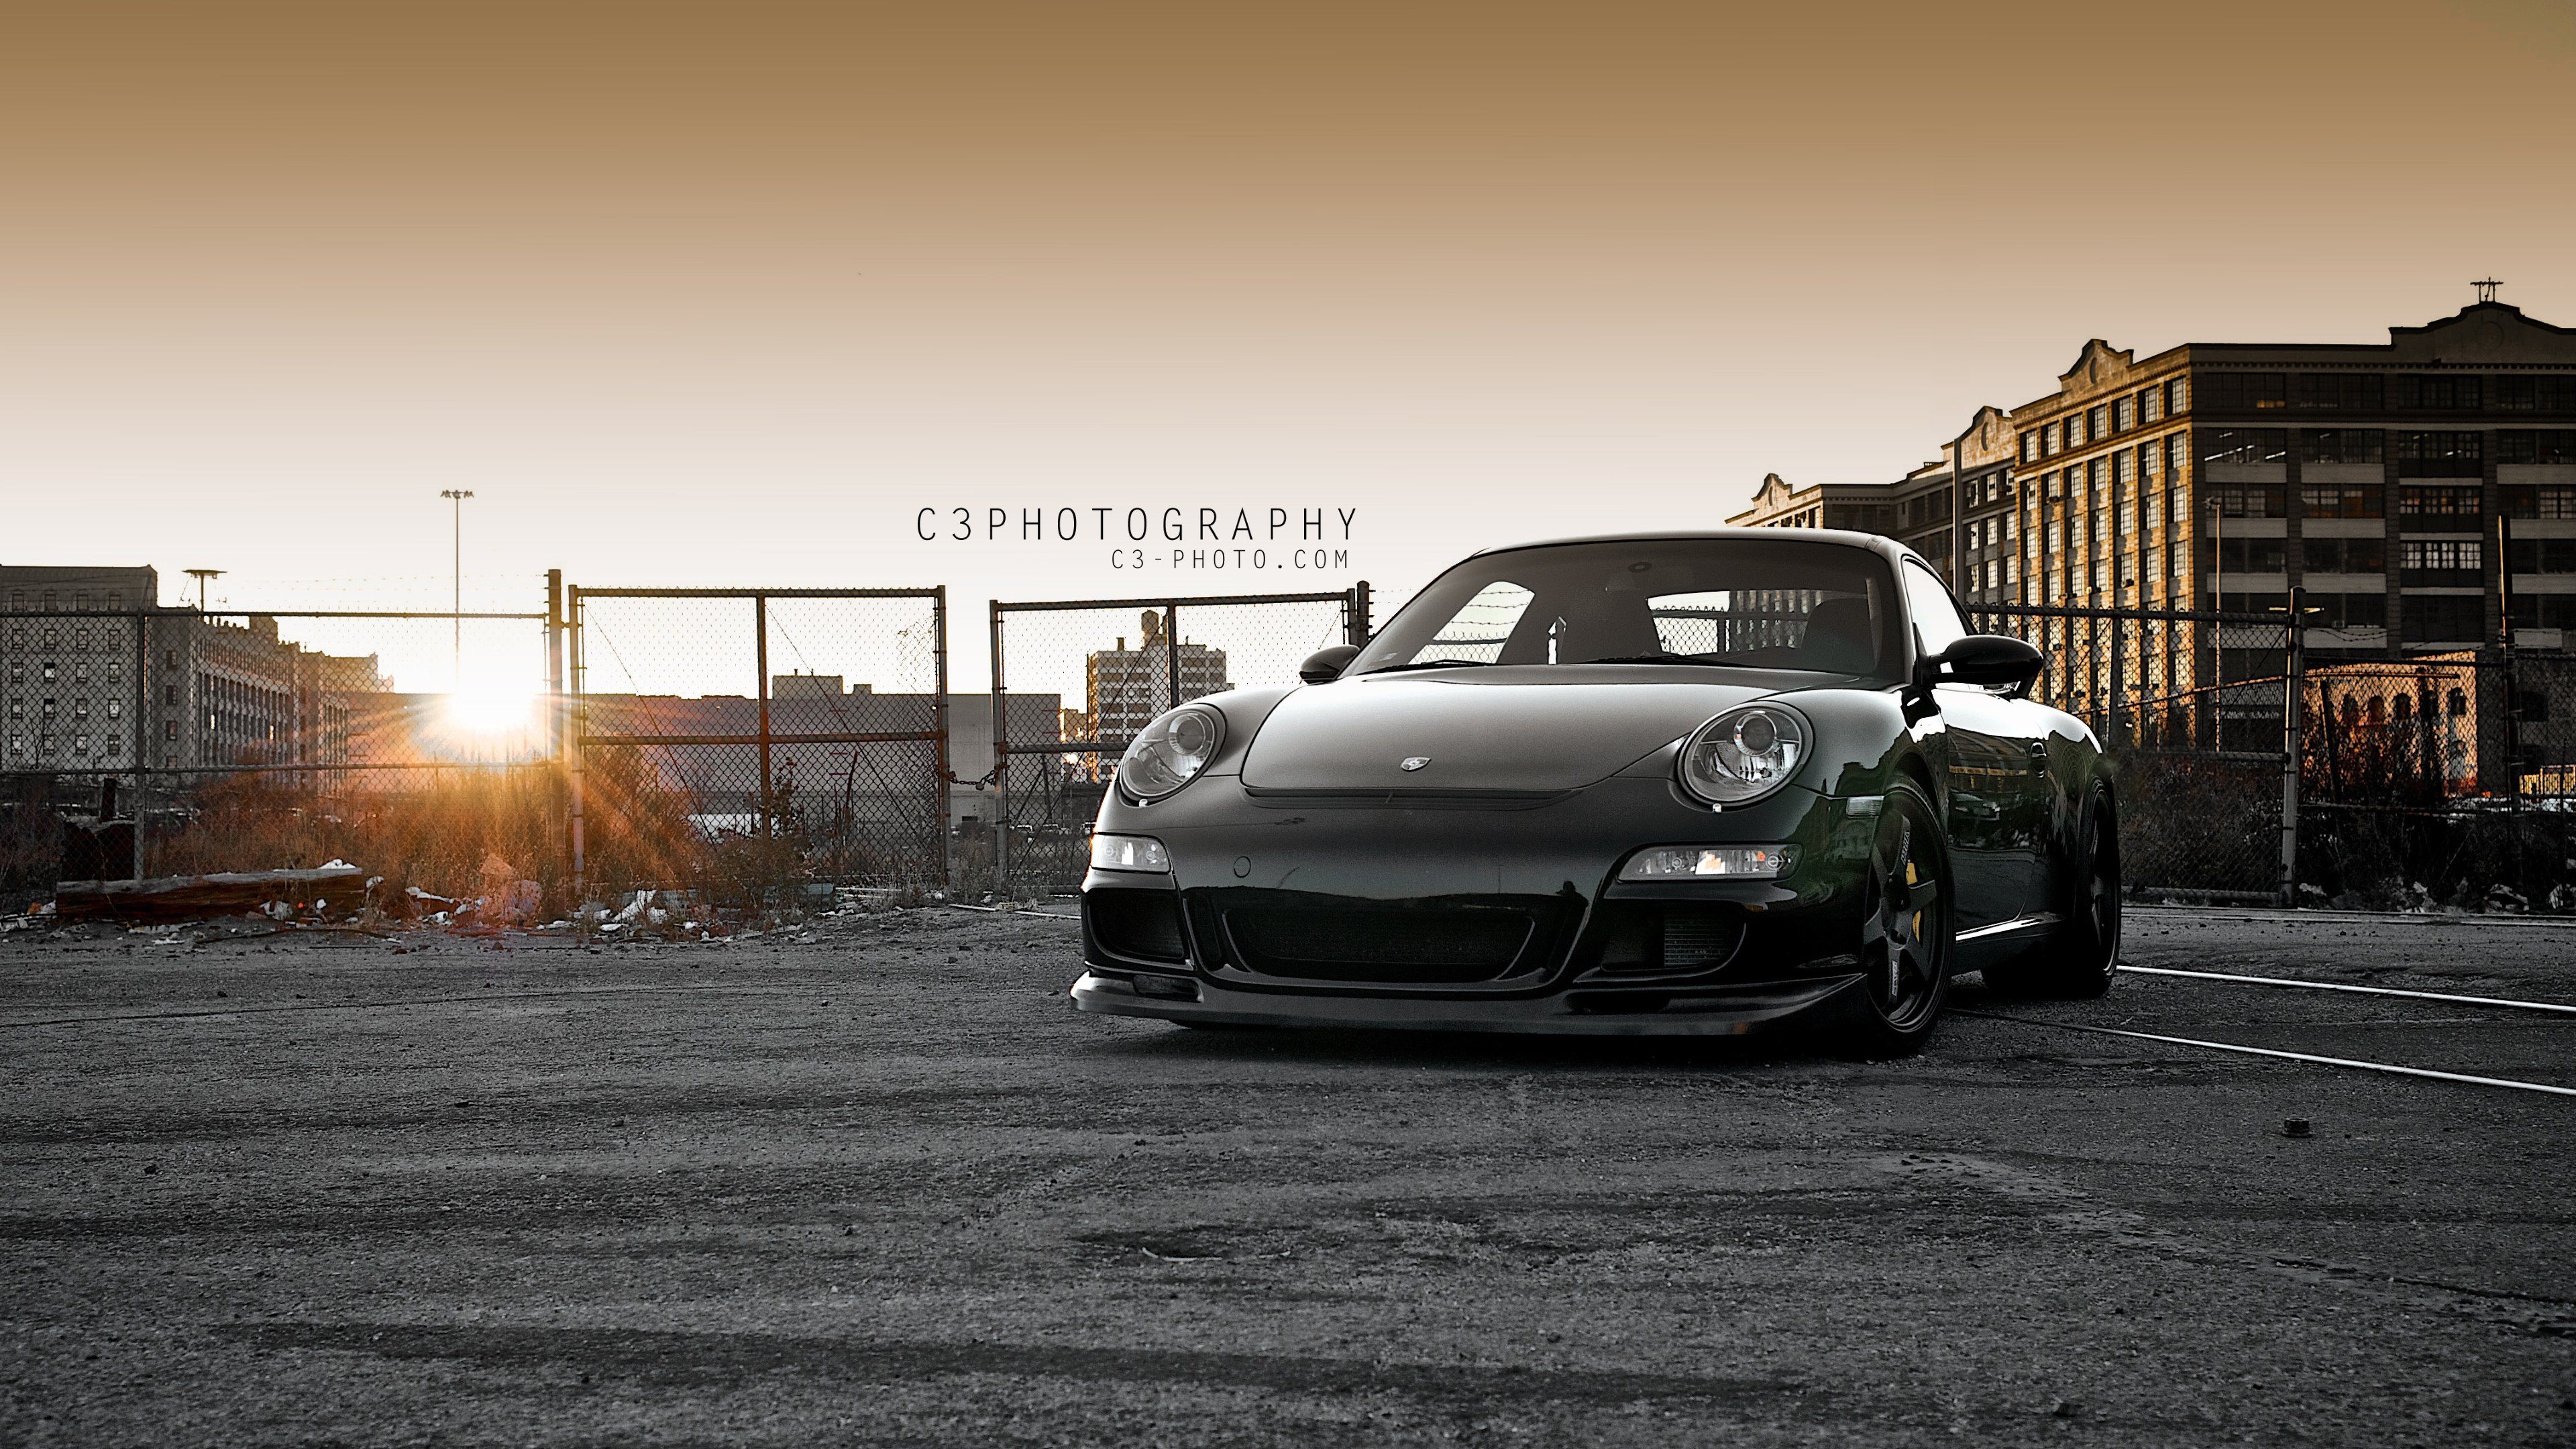 Porsche 911 ultra hd wallpapers - Ultra High Definition Wallpapers ...